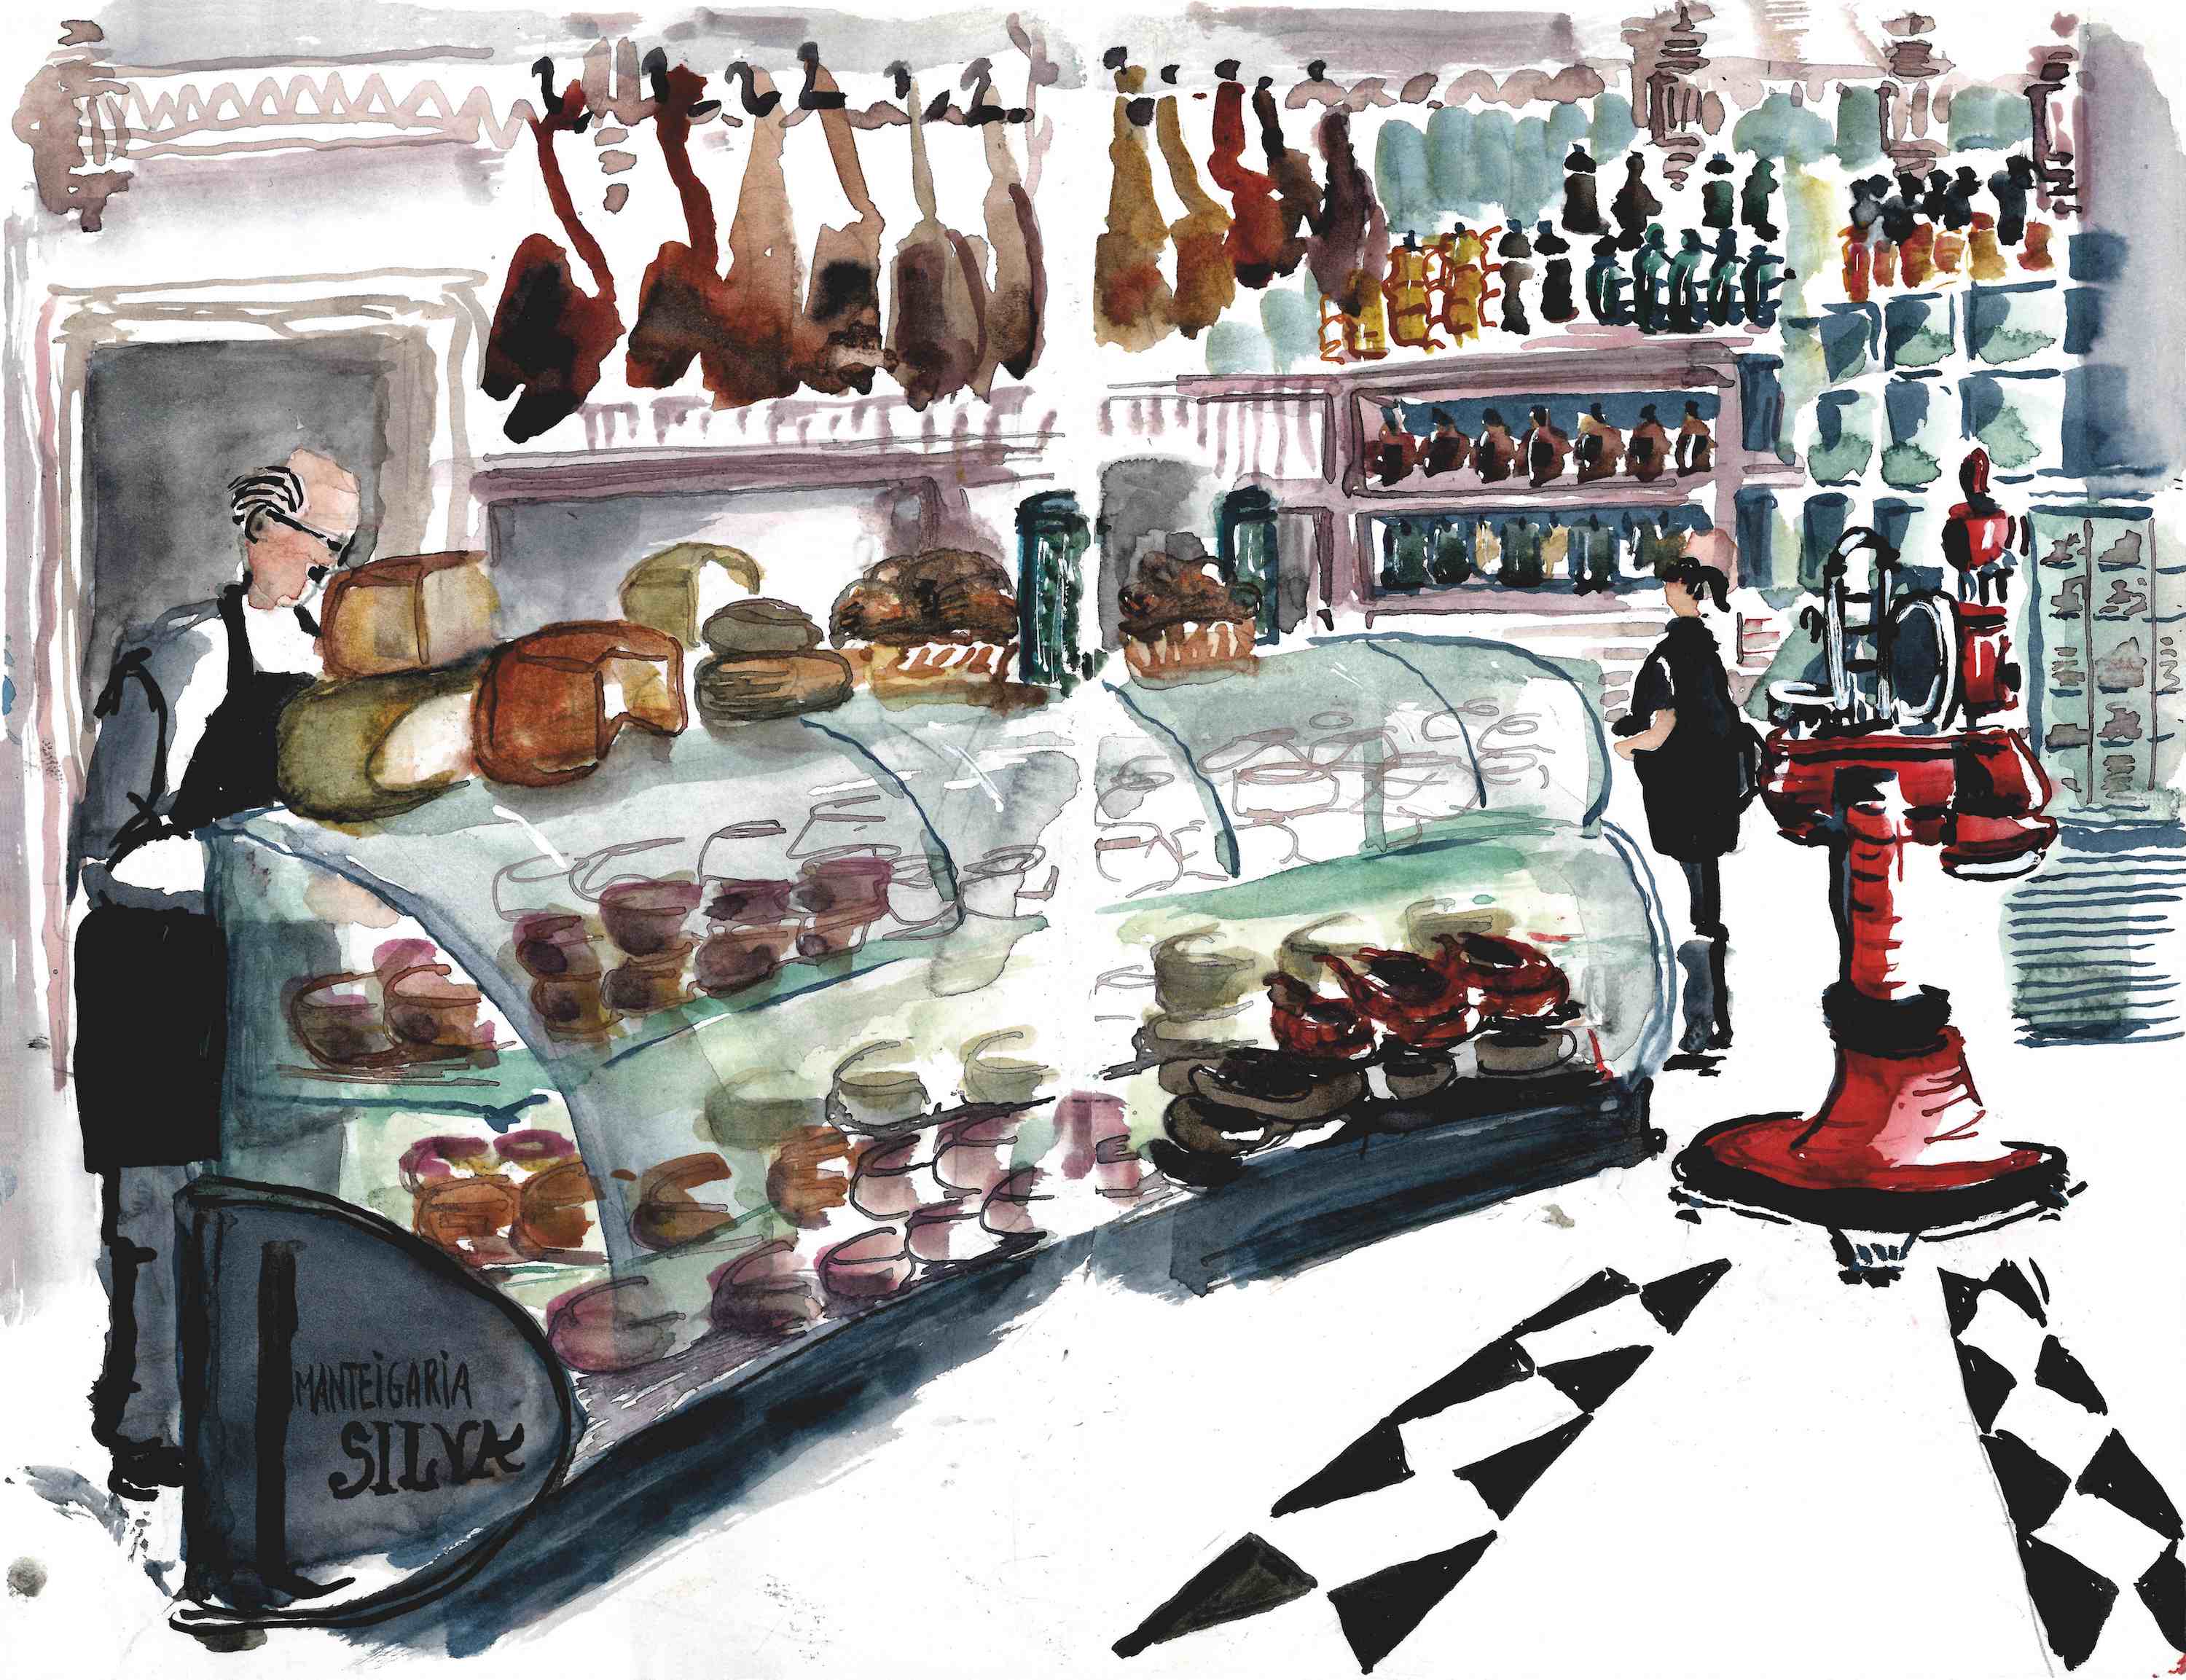 Livro com ilustrações de "urban sketchers" revela o interior das lojas históricas de Lisboa